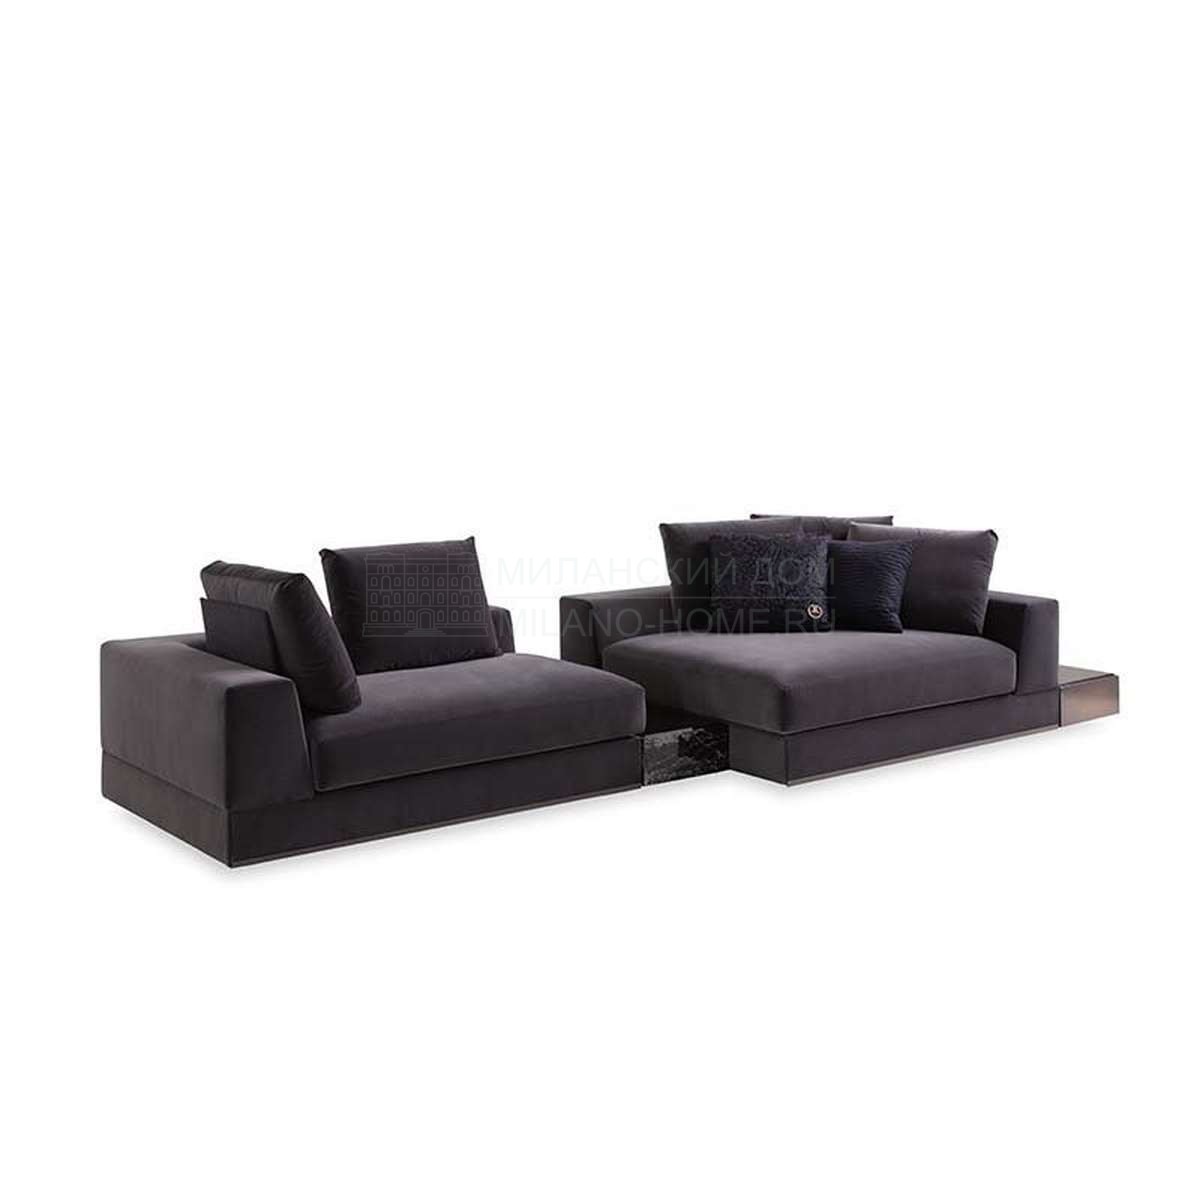 Модульный диван Studio 54 sofa modular из Италии фабрики FENDI Casa